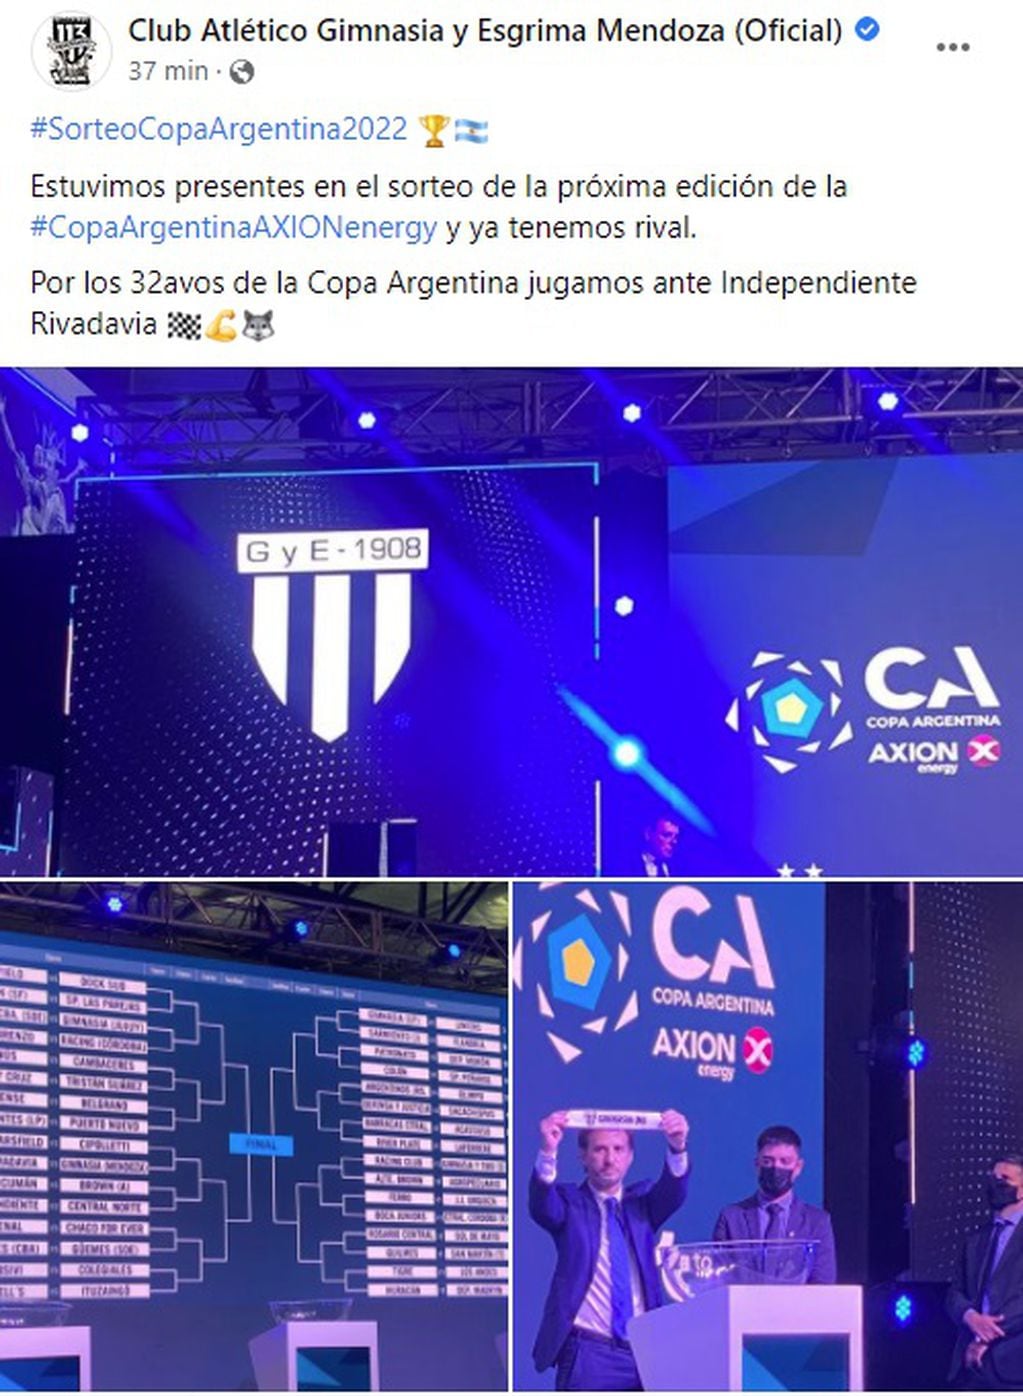 Gimnasia de Mendoza estuvo presente en el sorteo de la Copa Argentina y publicó en las redes la confirmación el clásico mendocino ante Independiente Rivadavia.